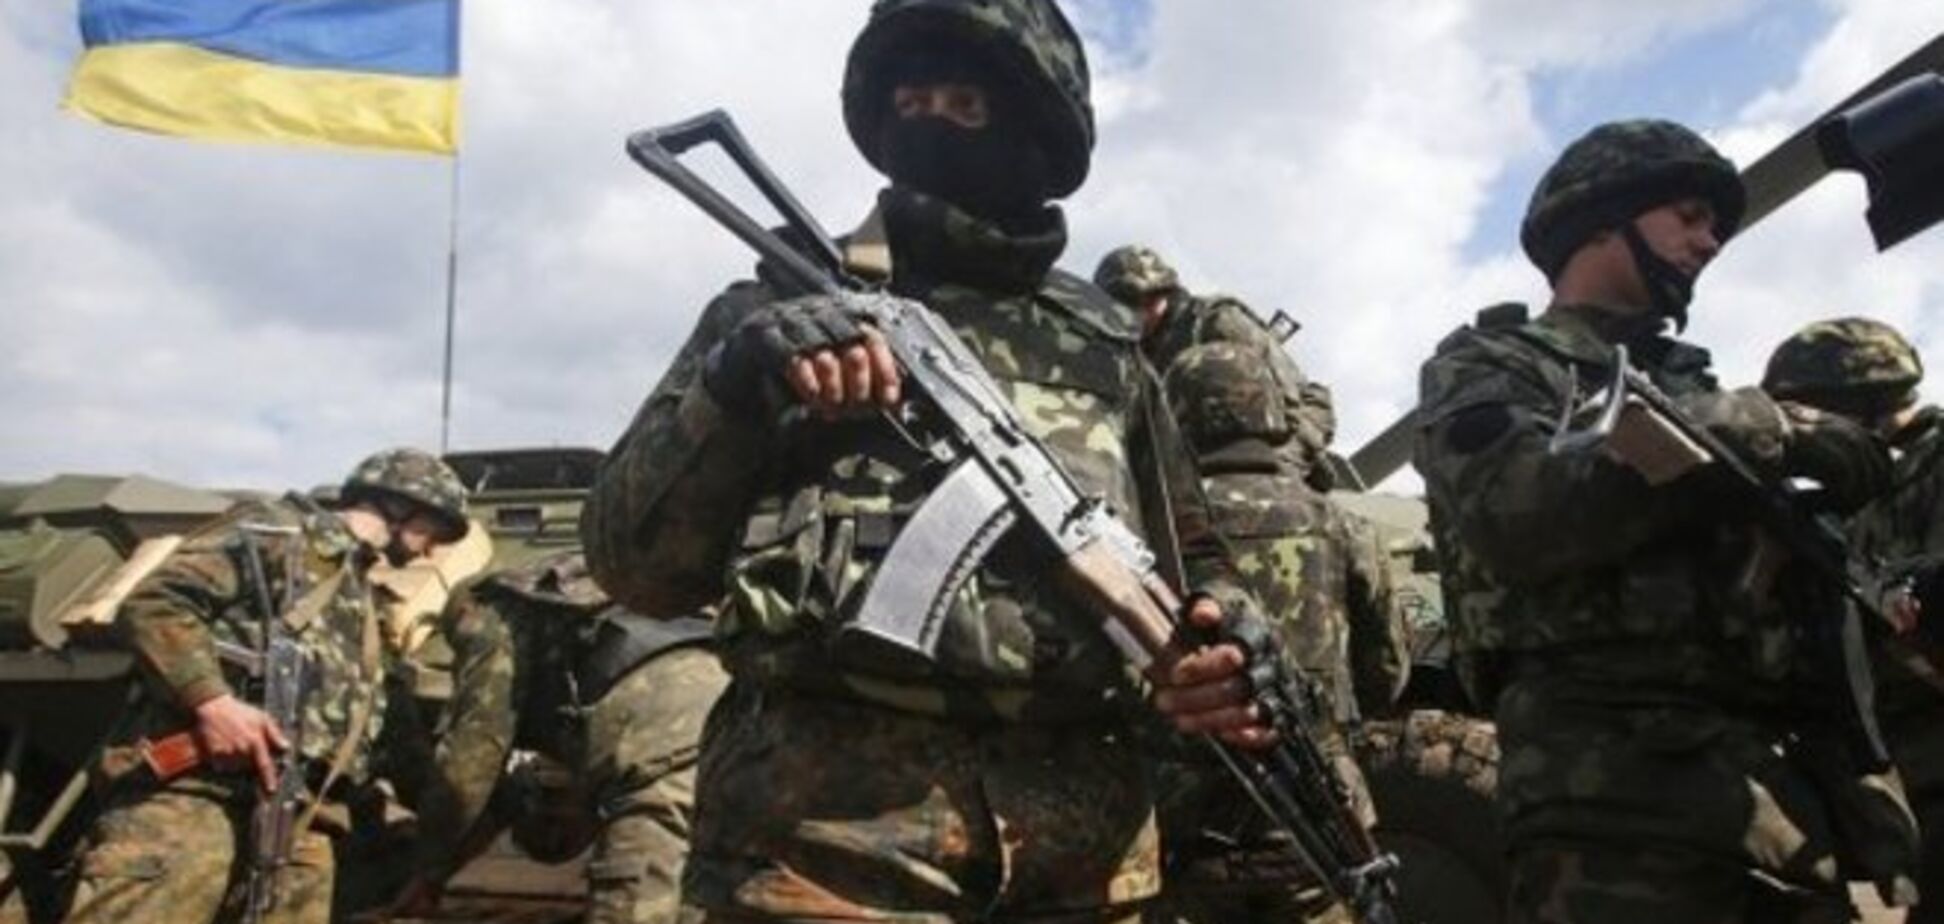 ЗМІ повідомили про затримання українського генерала за передачу терористам військових секретів